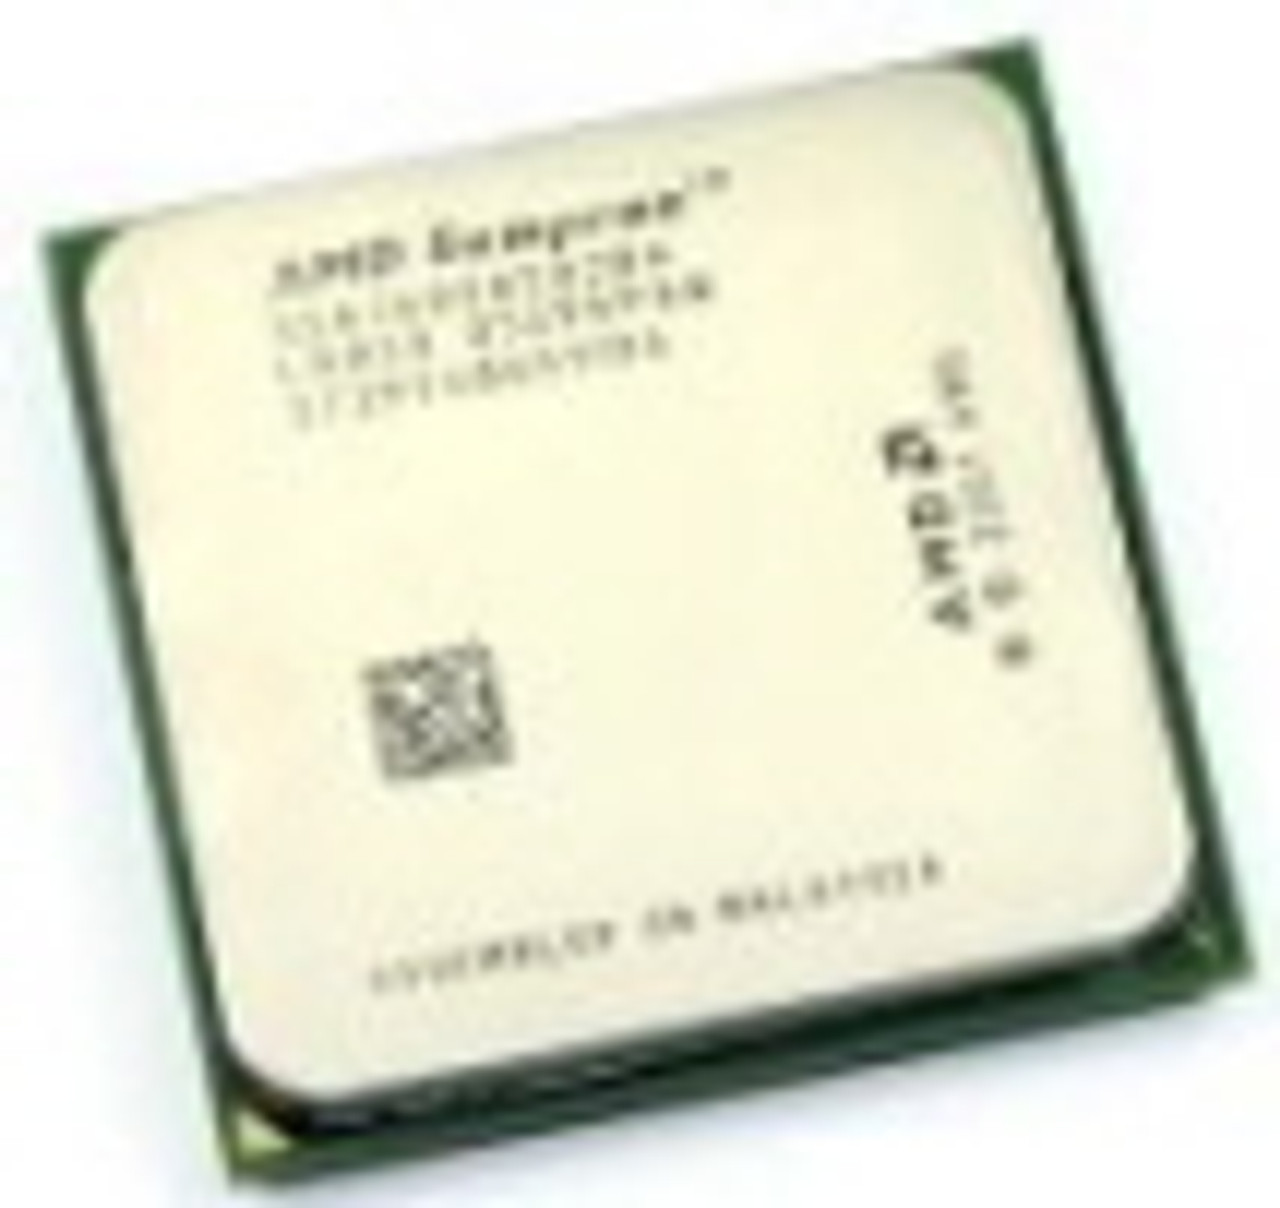 SDA2200DUT3D AMD Sempron 2200+ 1.5GHz 333MHz Desktop CPU